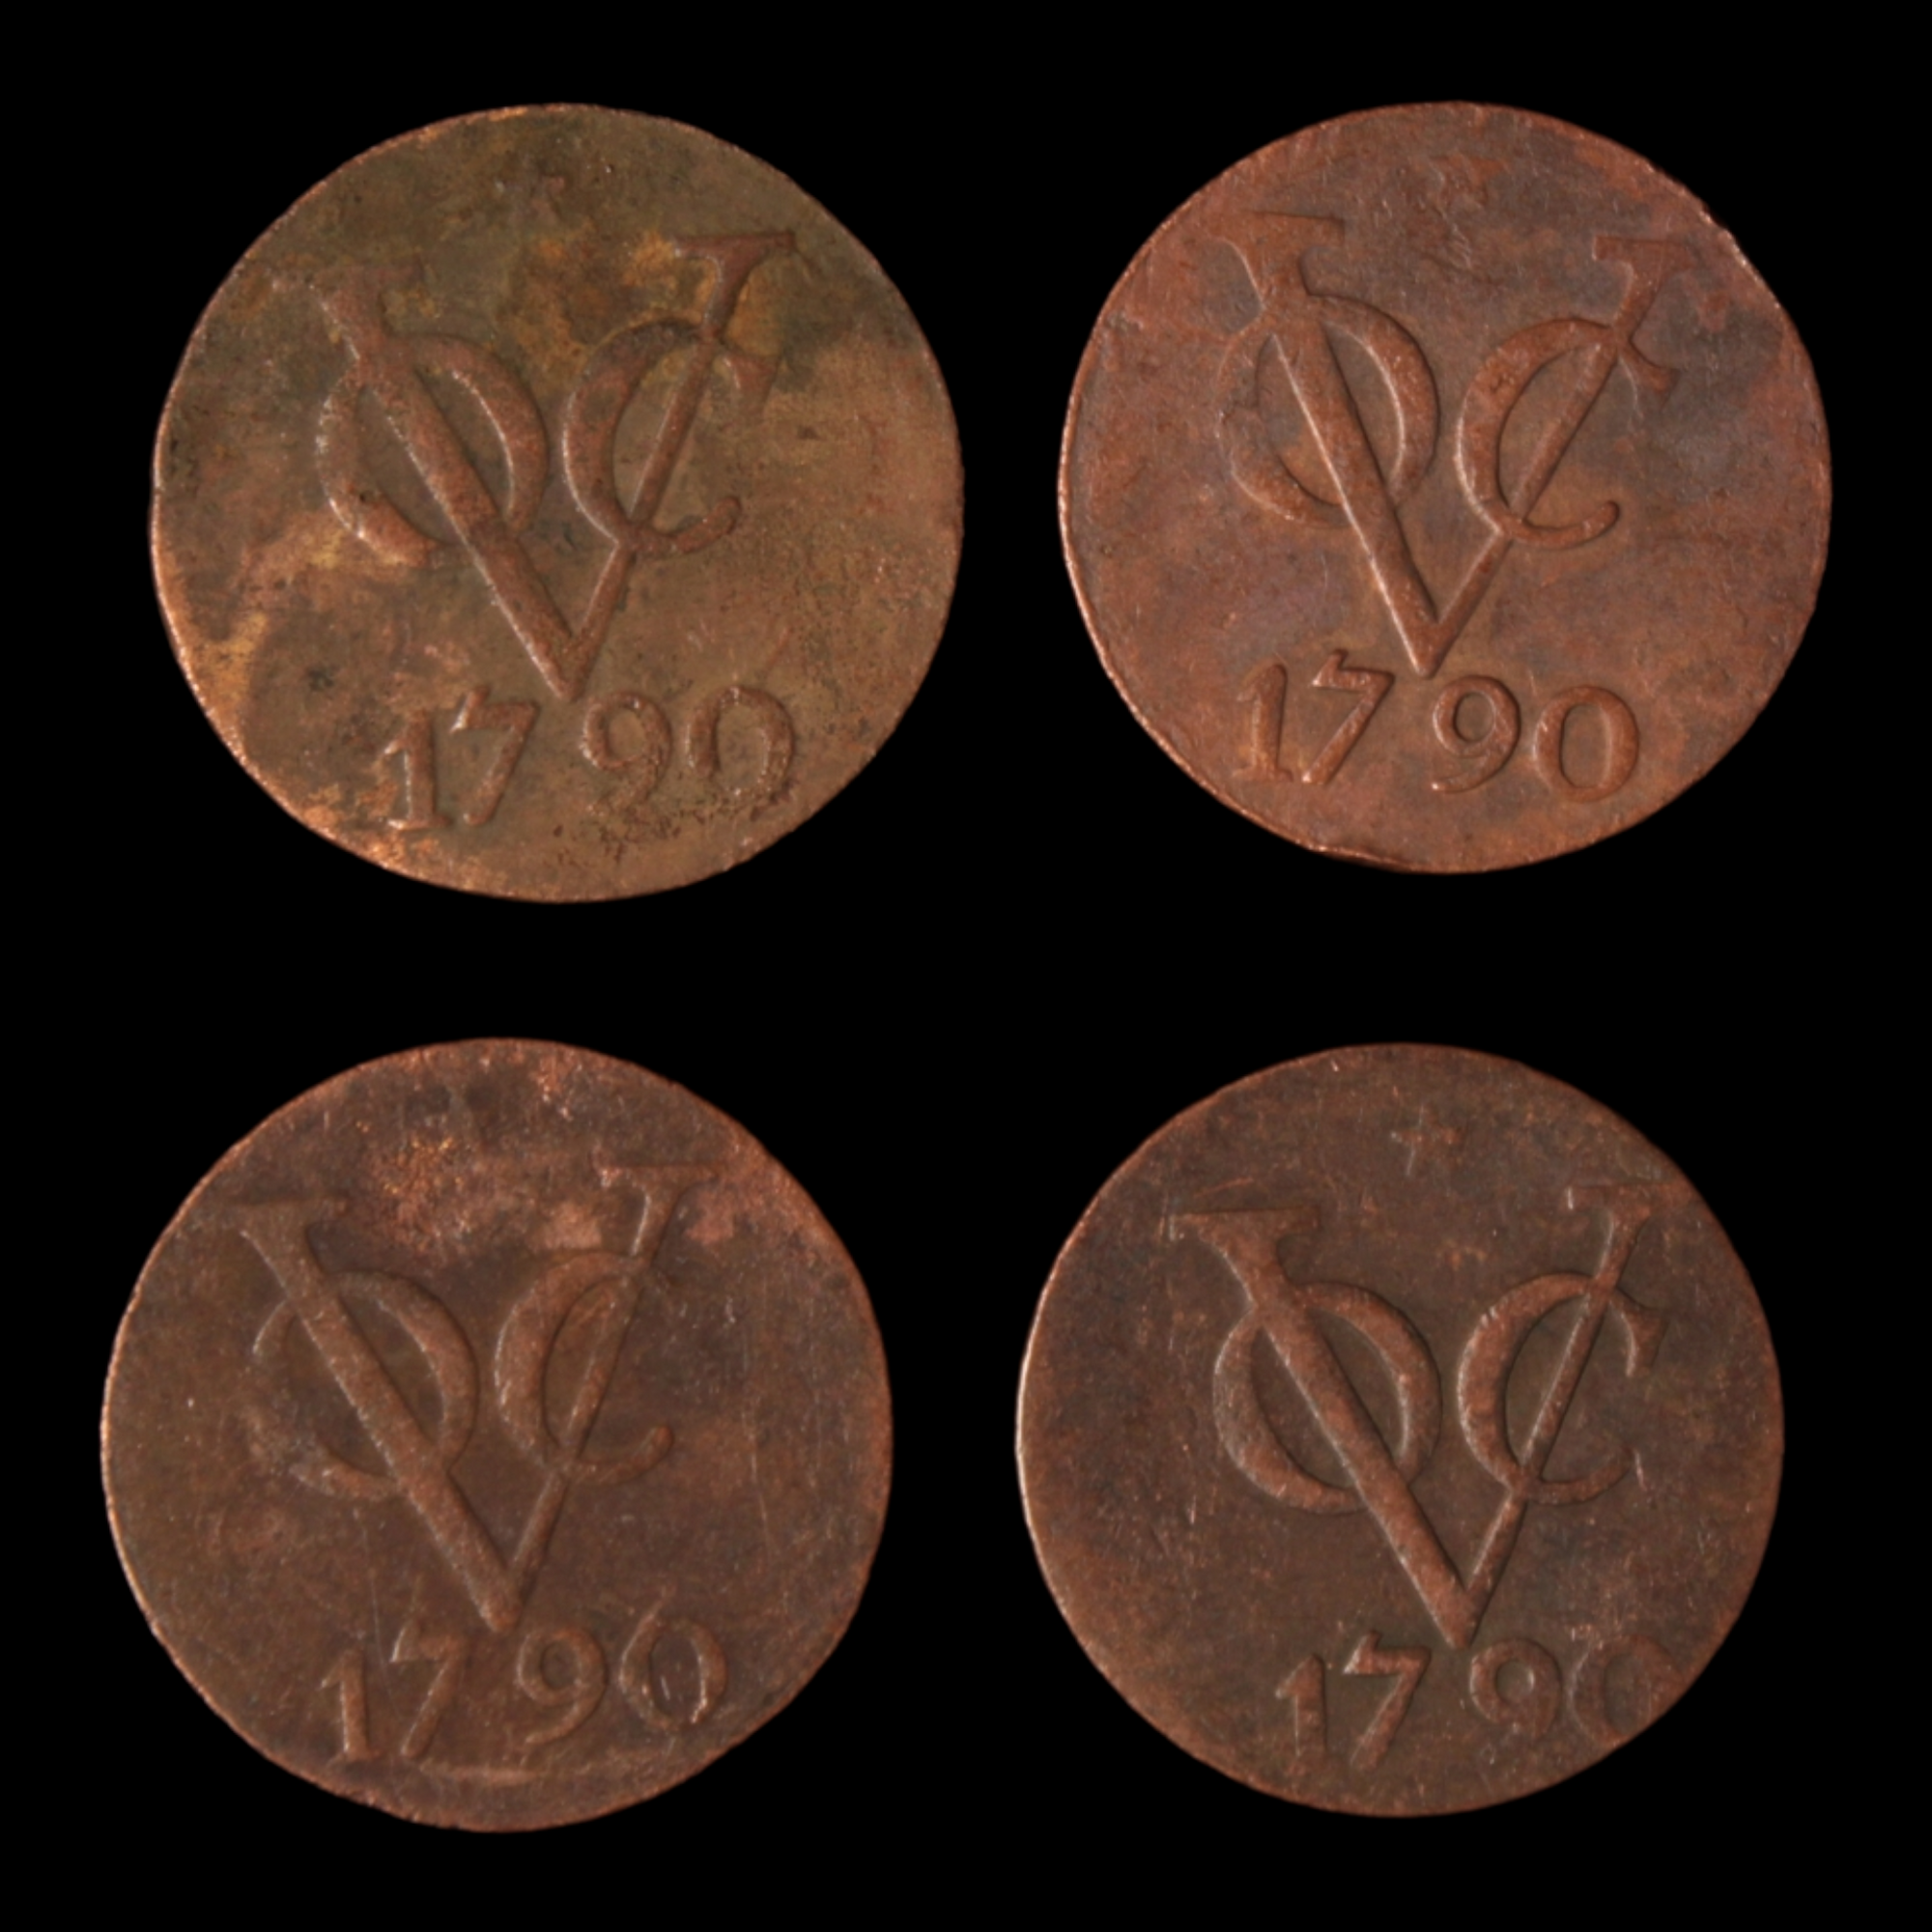 Dutch East India Co. (VOC) Double Duit Lot #3 - 1790 - Southeast Asia - 3/29/23 Auction